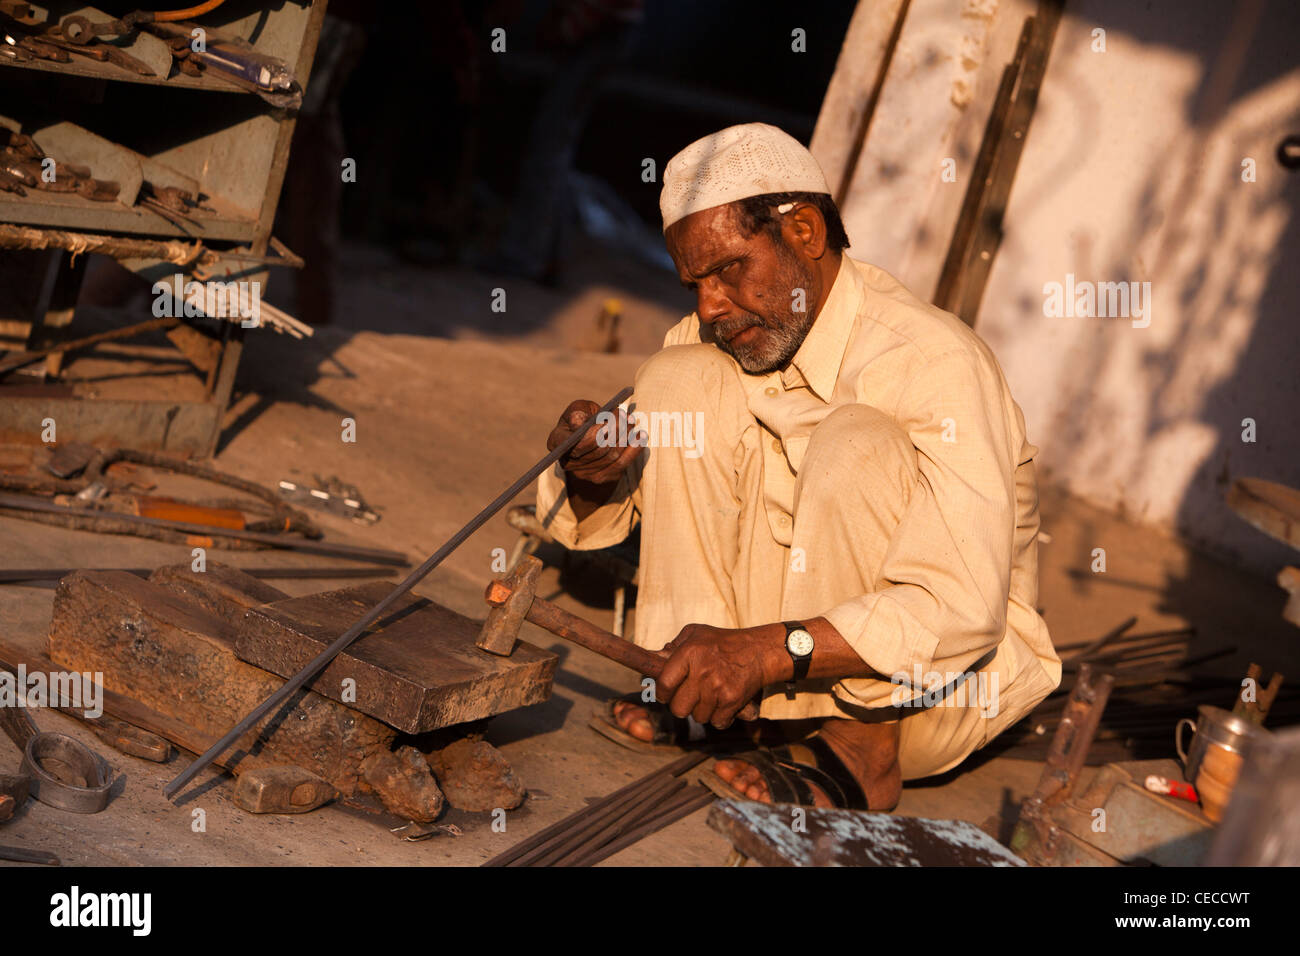 L'Inde, Uttar Pradesh, Varanasi, artisanat, redressage de métallurgistes tige métallique Banque D'Images